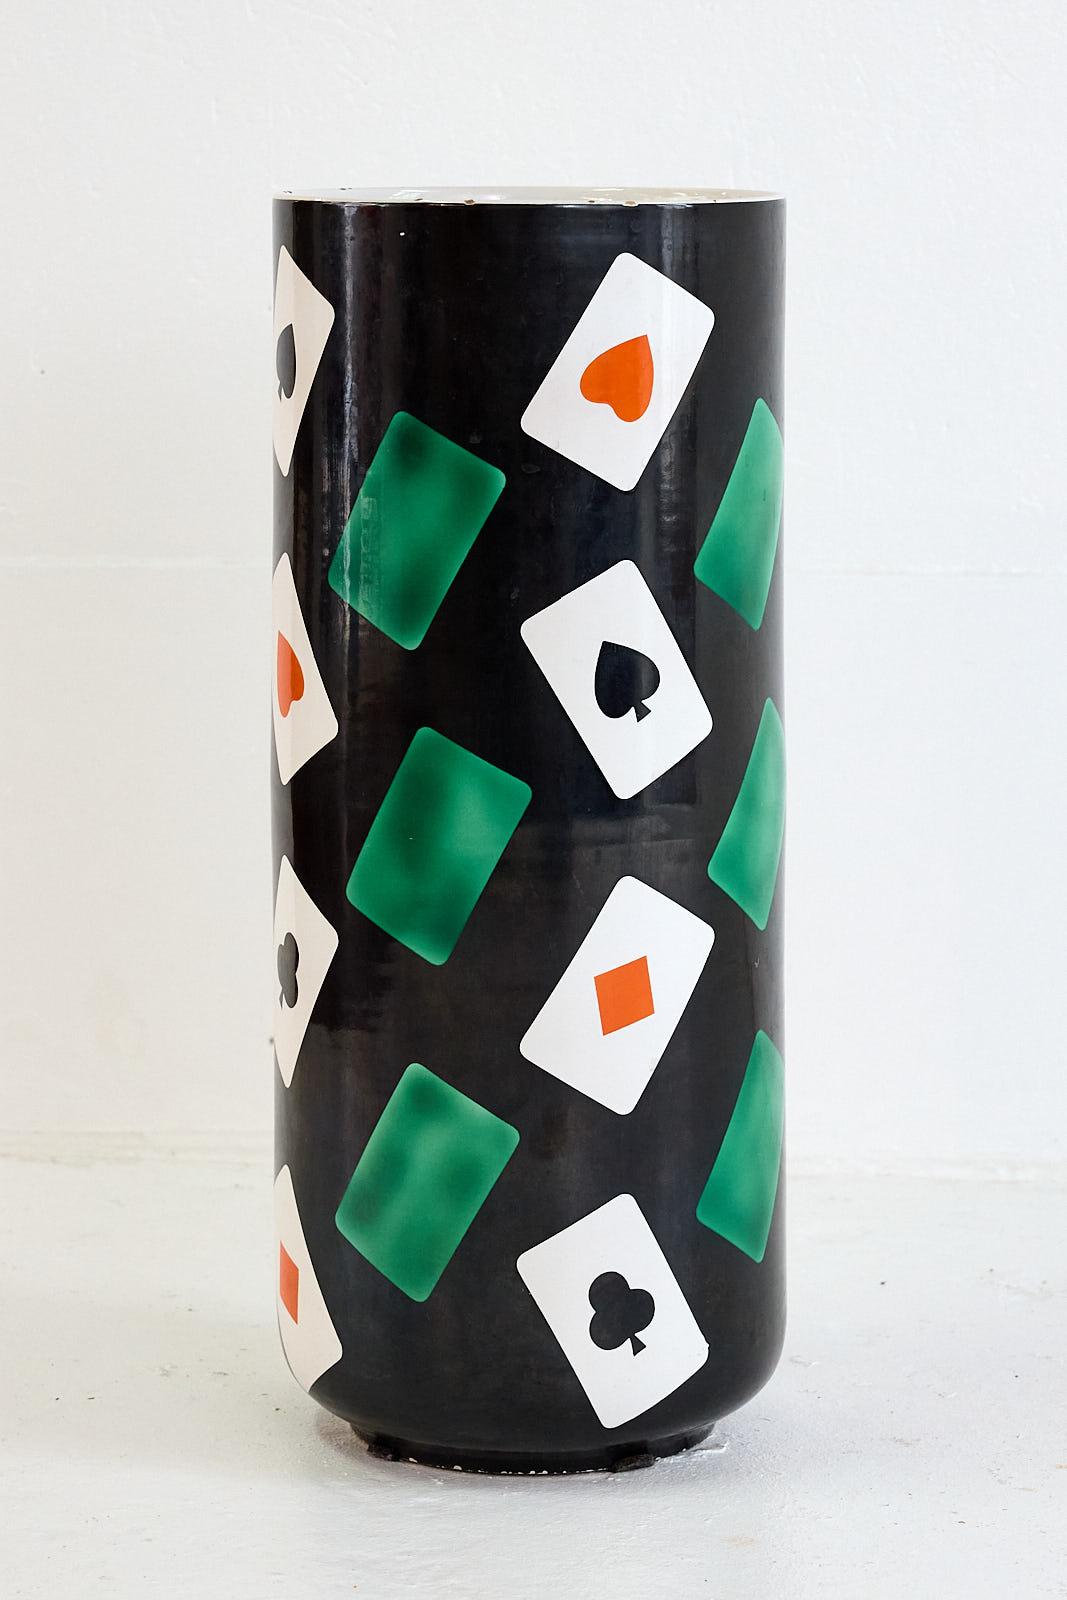 Magnifique porte-parapluie des années 1950 en céramique avec une décoration peinte à la main présentant un champ noir spectaculaire qui met en valeur les cartes à jouer dans de riches teintes vertes et rouges. De forme cylindrique, il est marqué en